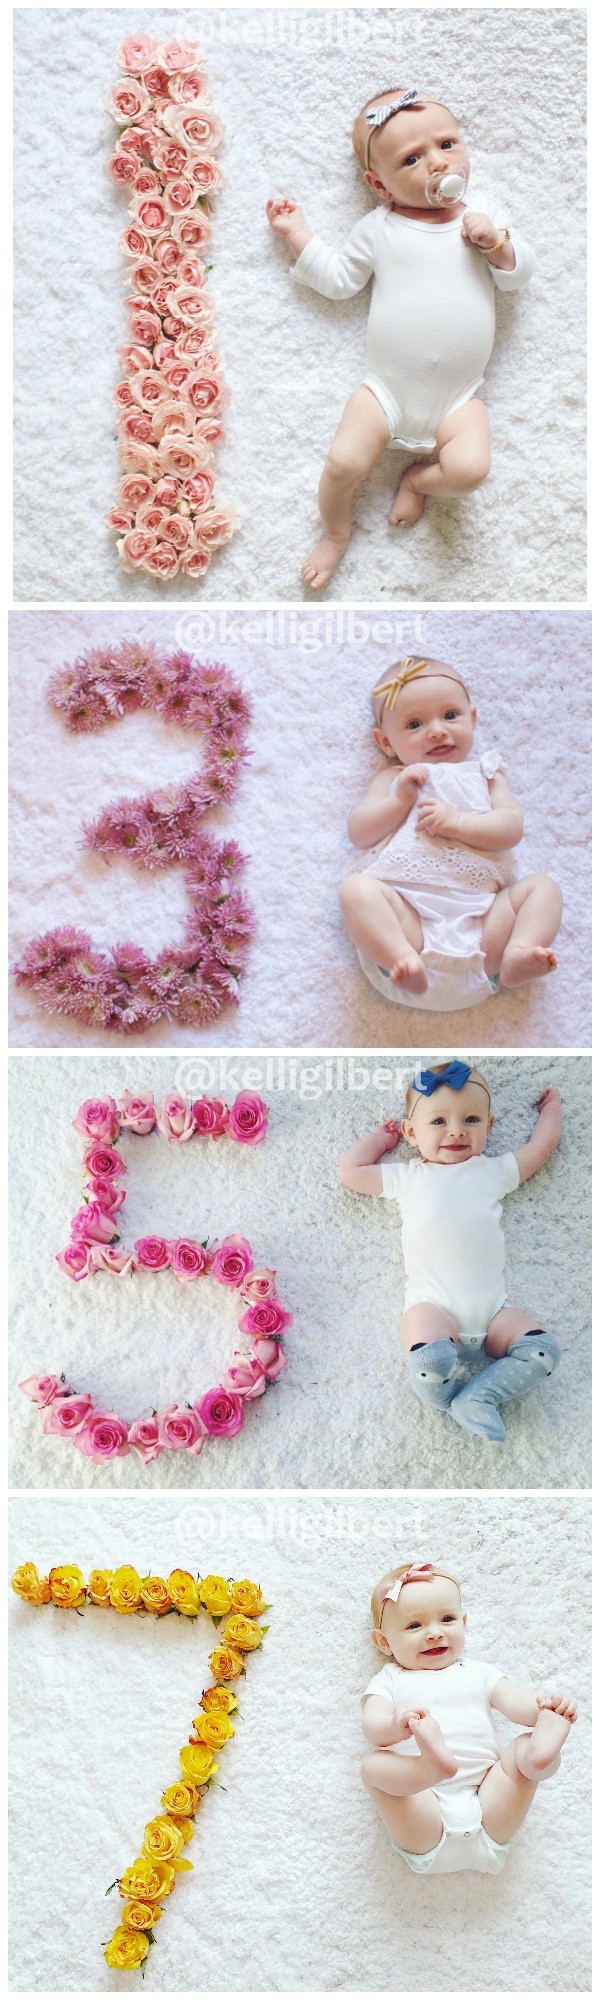 idei pentru fotografii lunare pentru bebeluși cu petale de flori.